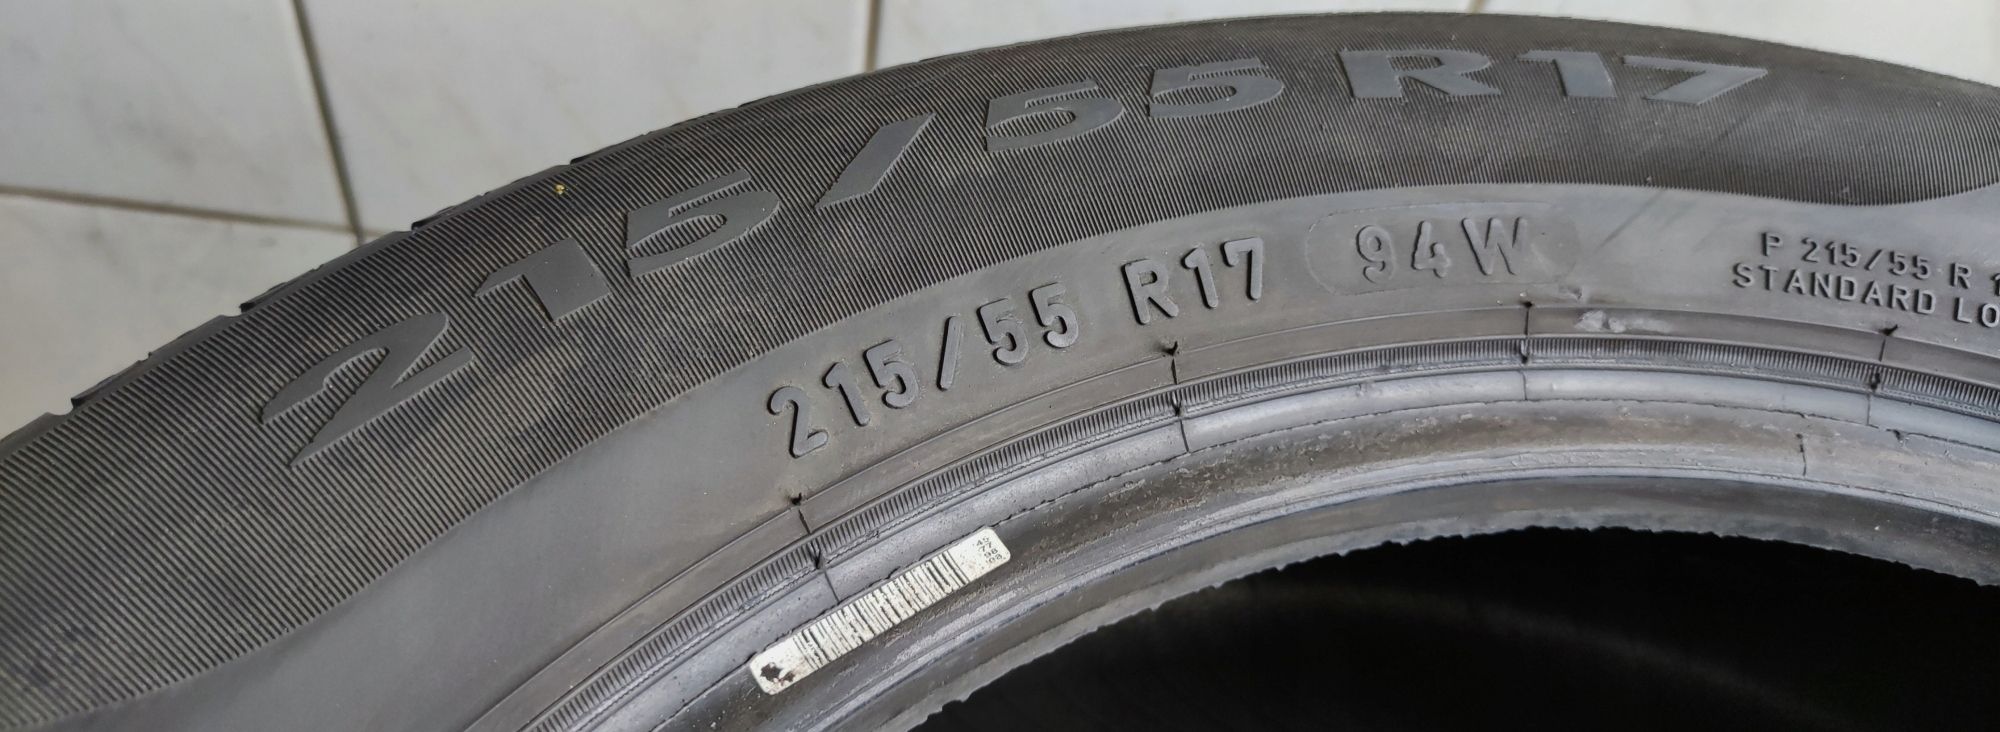 Opony 215/55/17 Pirelli 5,67mm 2018r 4szt.=650zł L